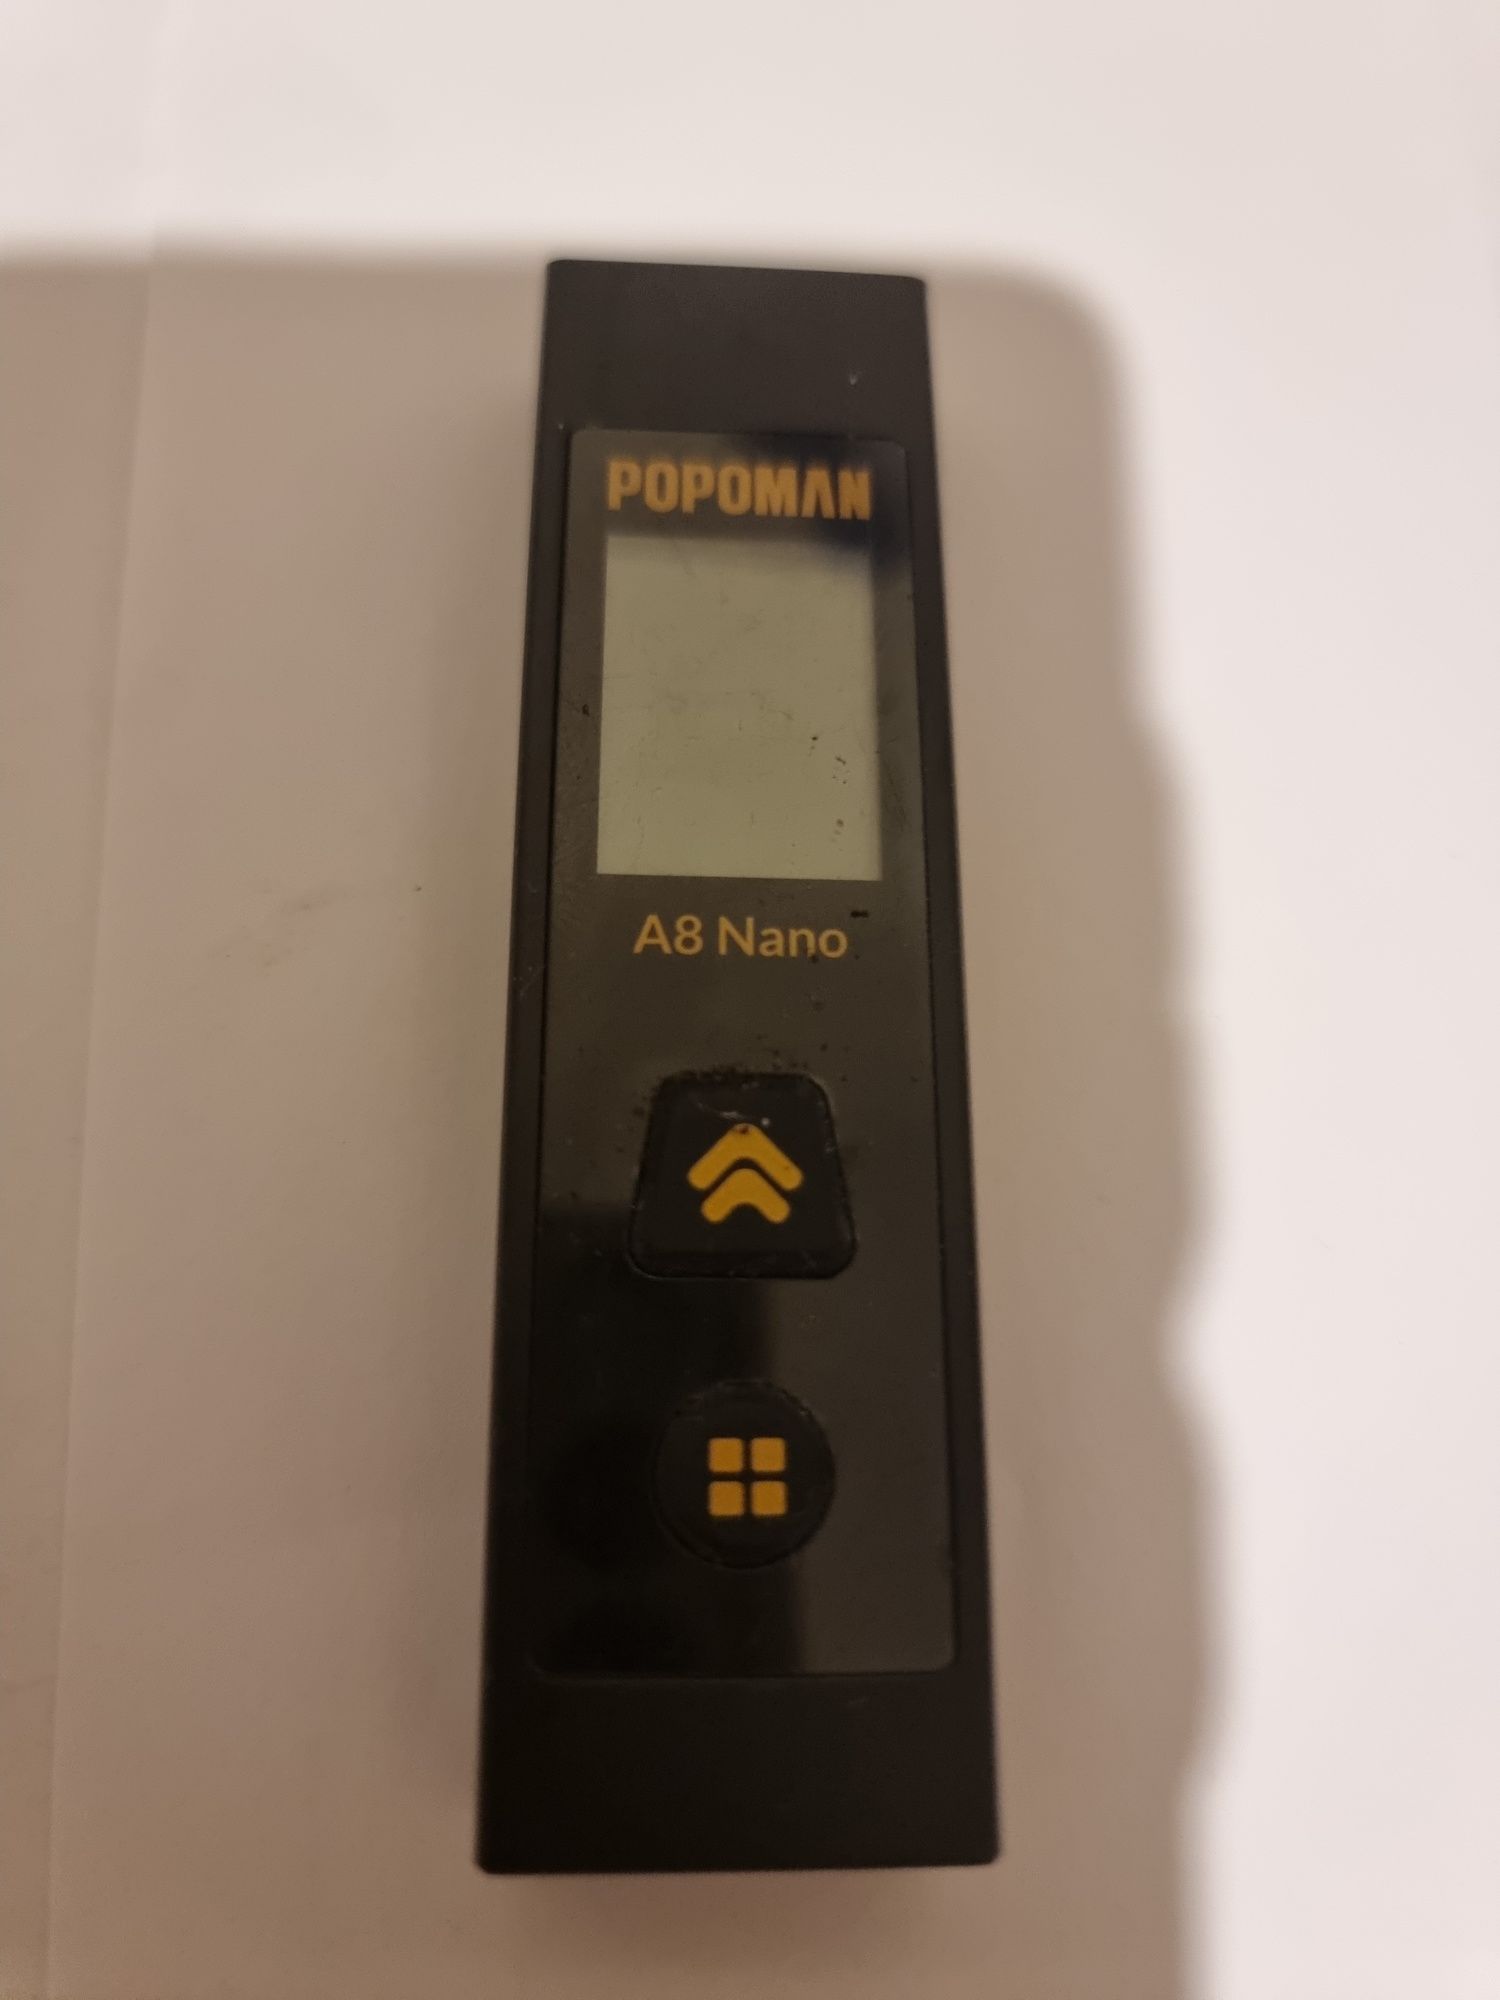 POPOMAN A8 Nano Laser Measure